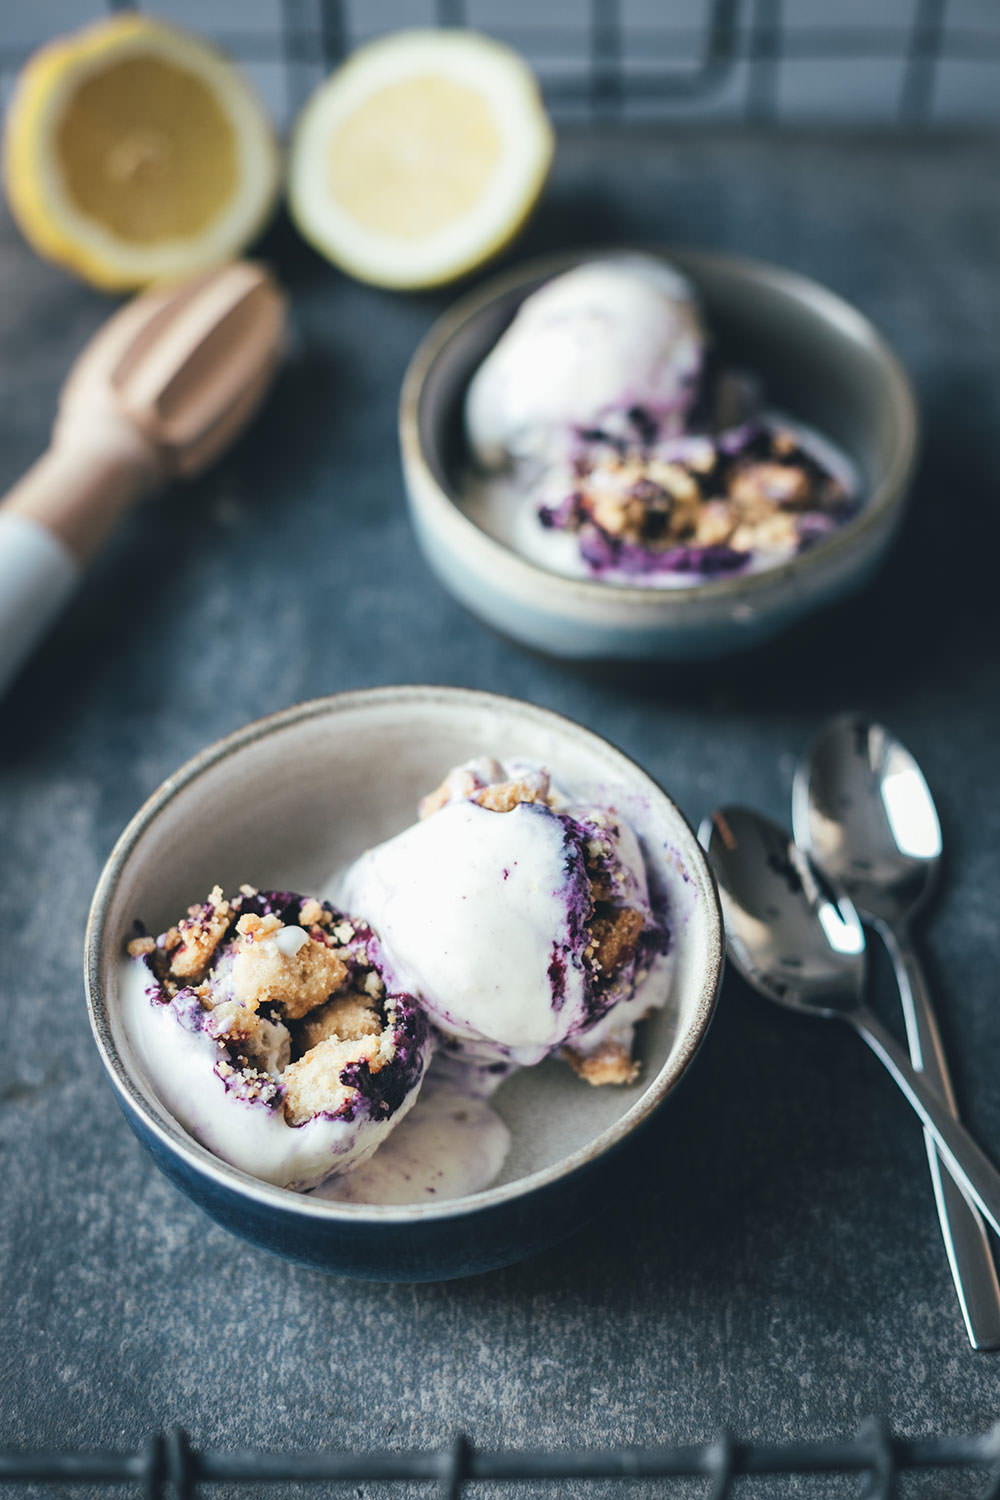 Rezept für Blueberry Cheesecake Ice Cream – Blaubeer-Käsekuchen-Eis | super einfaches Rezept für ein unglaublich leckeres Eis - funktioniert mit und ohne Eismaschine | moeyskitchen.com #eis #eiscreme #icecream #heidelbeeren #blaubeeren #blueberries #cheesecake #käsekuchen #sommerrezept #foodblogger #rezepte #streusel #eismaschine